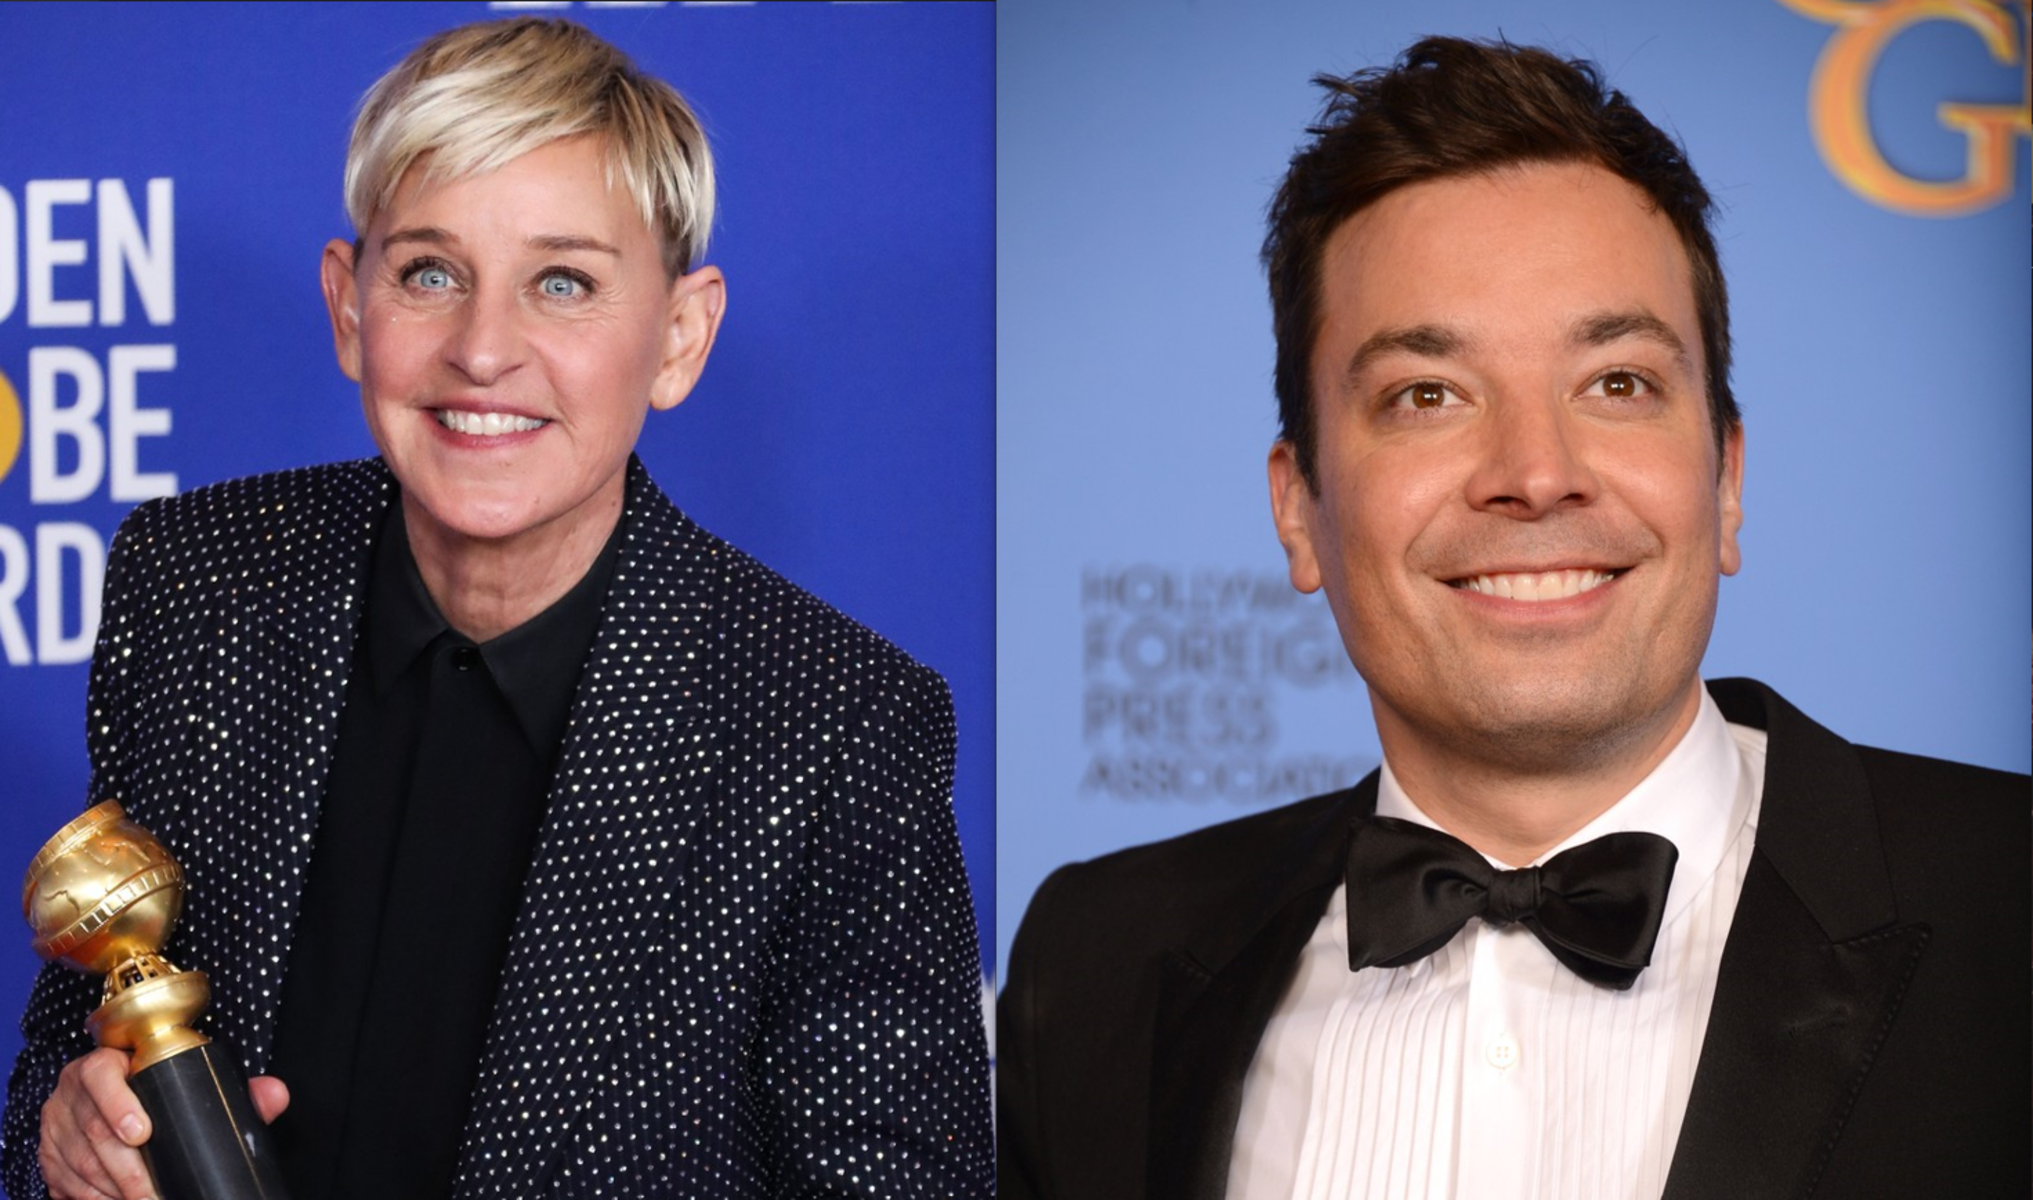 Ellen DeGeneresová a Jimmy Fallon.